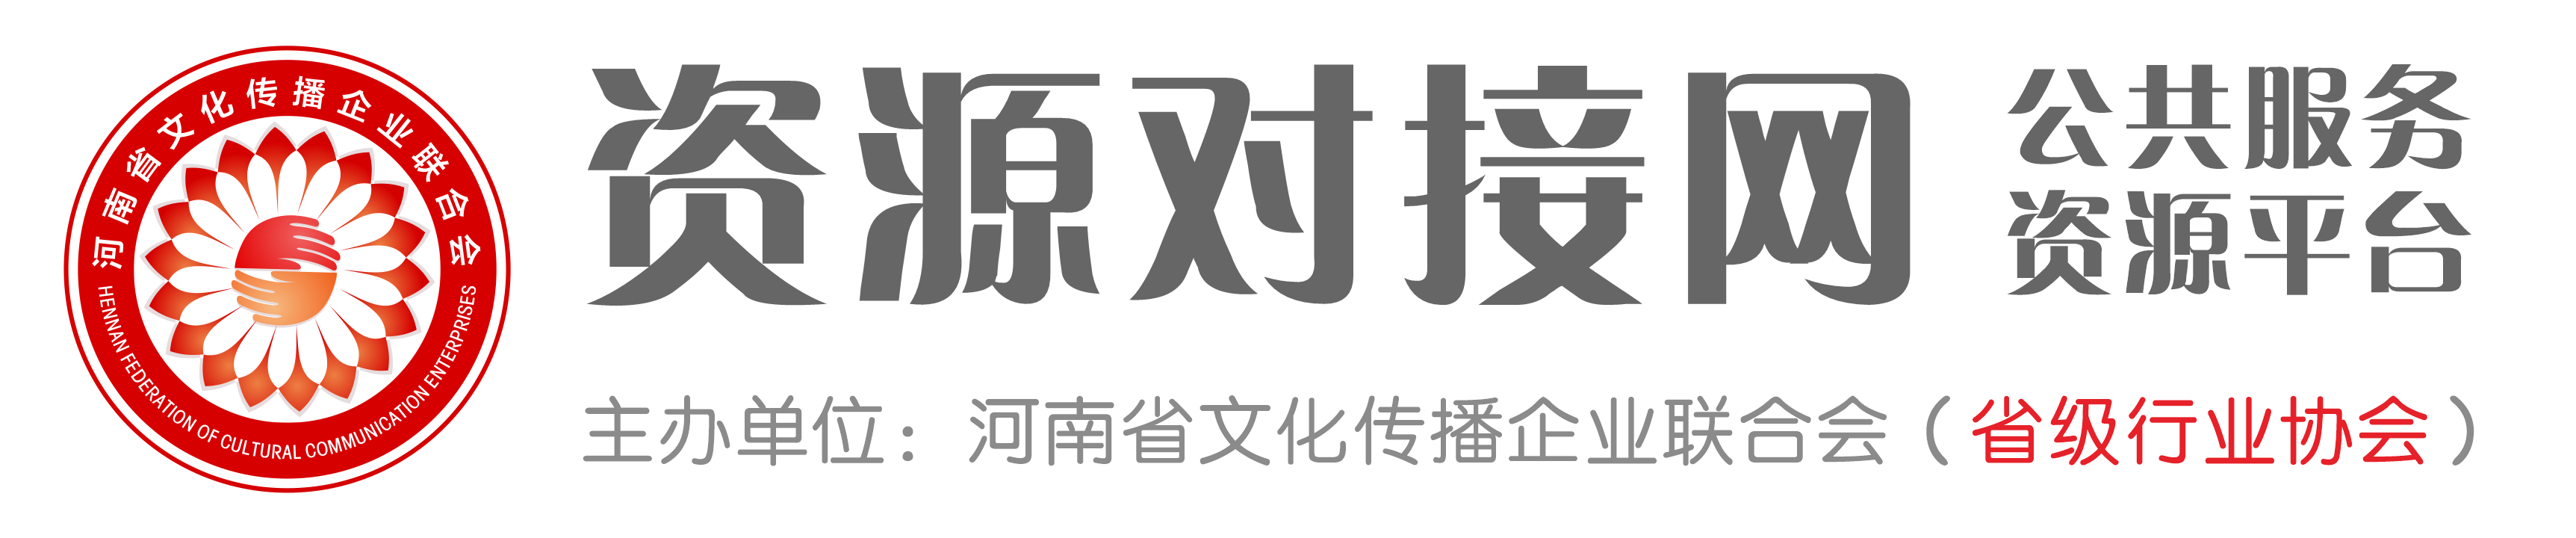 河南省文化传播企业联合会官网